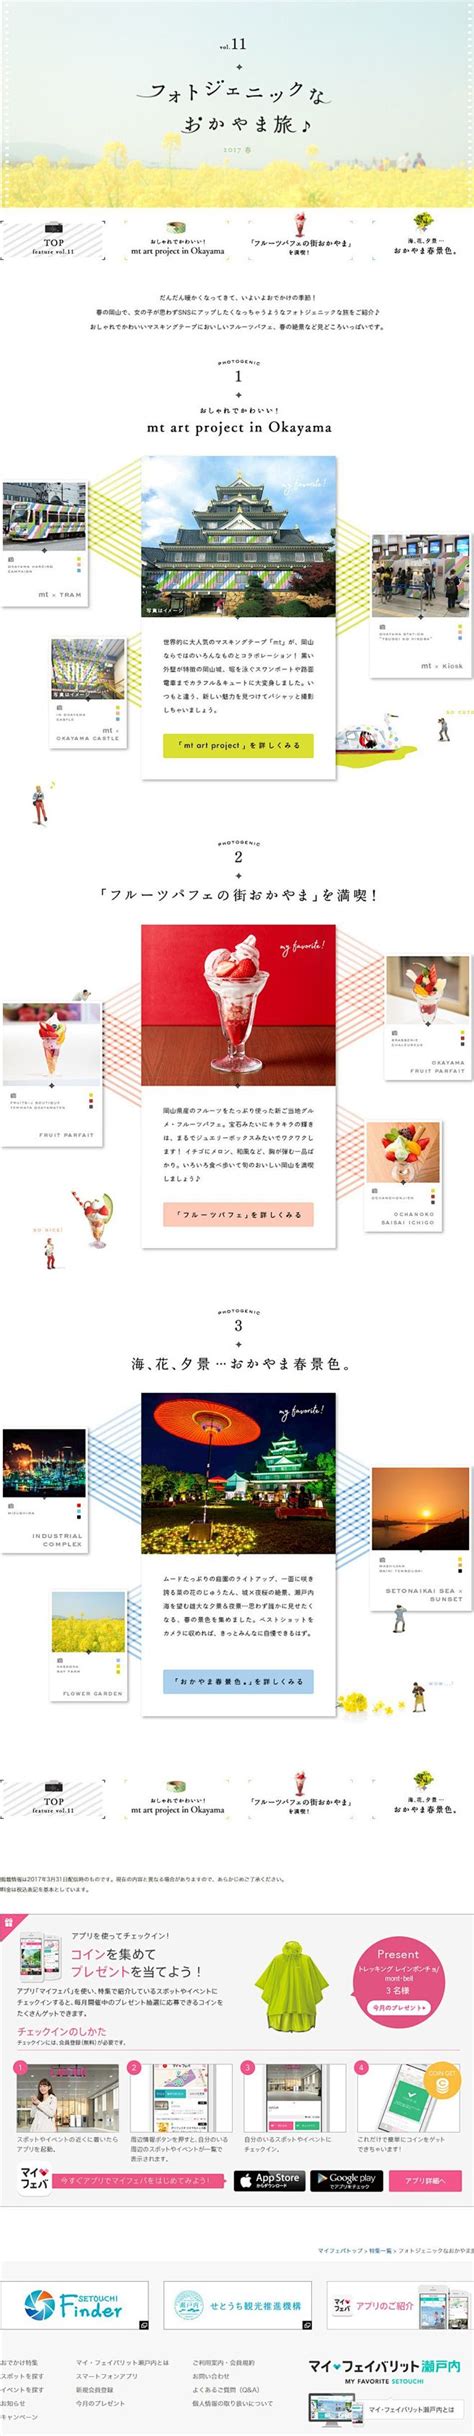 日本网站设计的一些图片(日本网页设计)_V优客